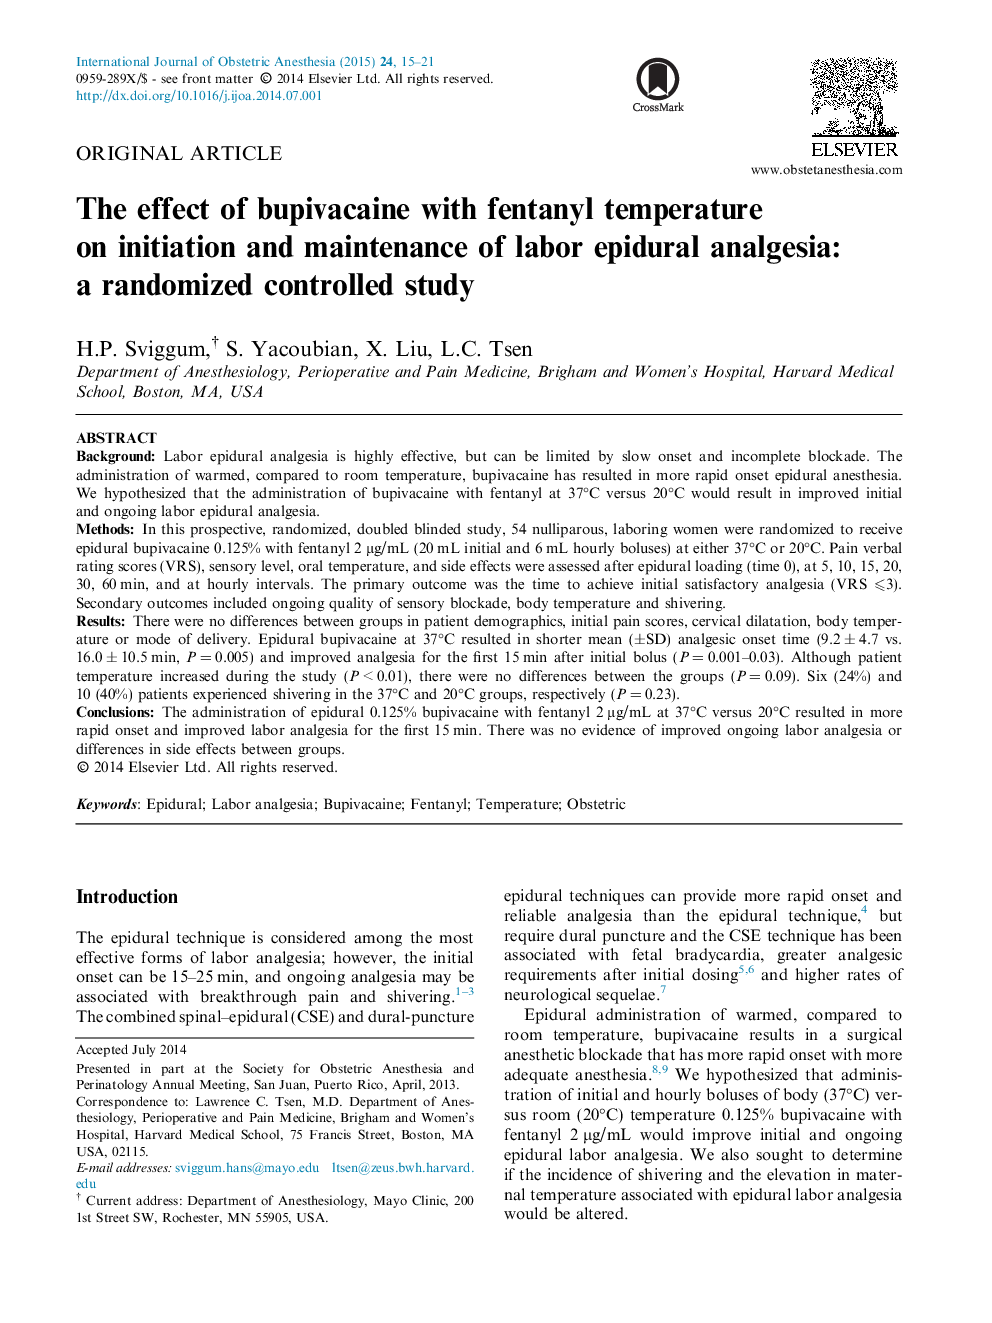 اثر بوپیواکایین با دمای فنتانیل در شروع و نگهداری بیهوشی اپیدورال کار: یک مطالعه کنترل شده تصادفی 